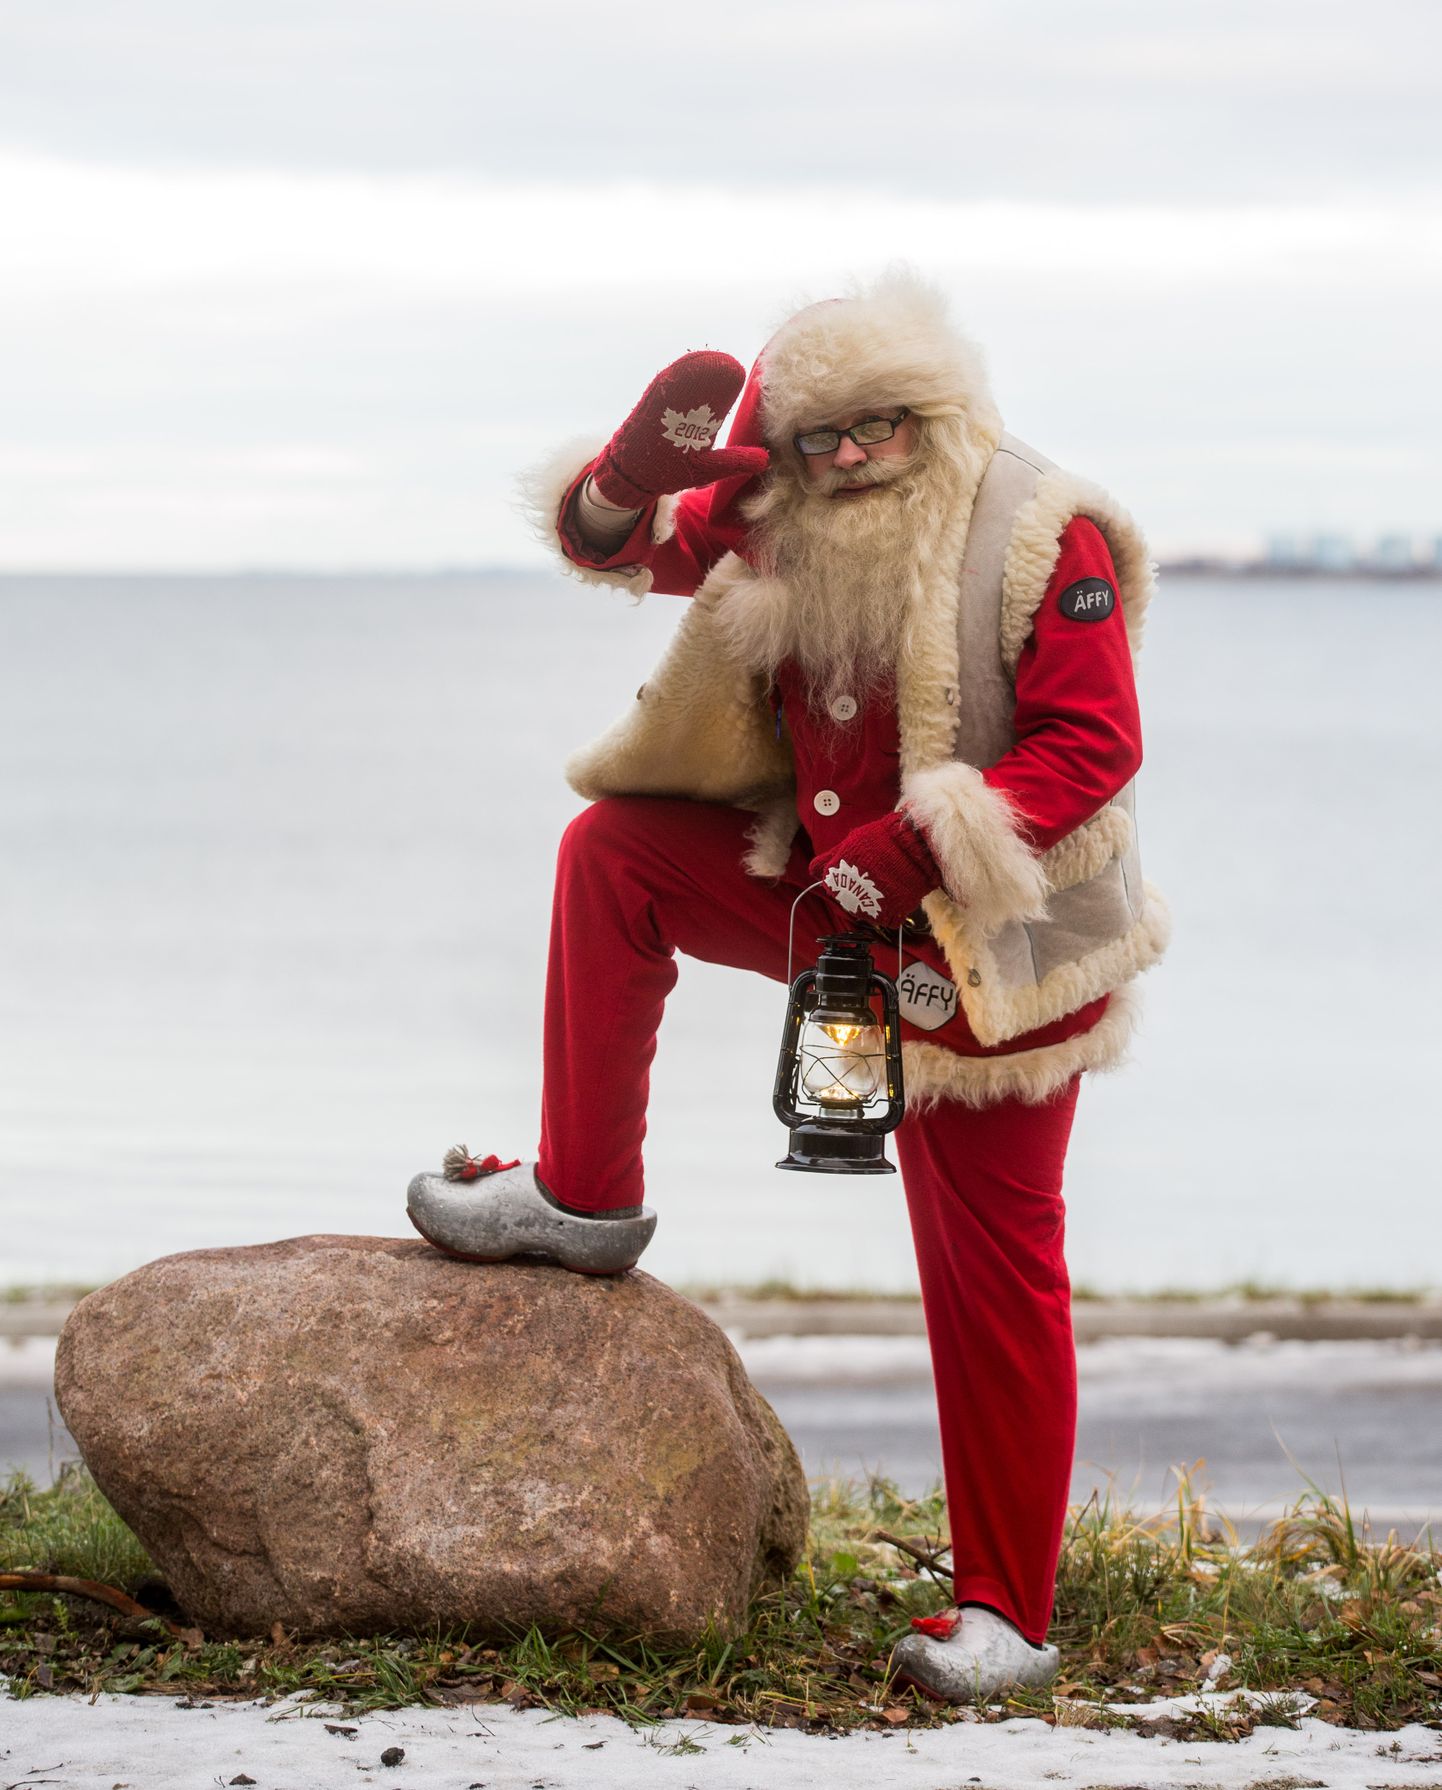 Jõuluvana Äffy end pingelise töö vaheajal Tallinna lahe kaldal tuulutamas. Mõni pere on ta enda juurde tellinud lausa kümneks aastaks ette.